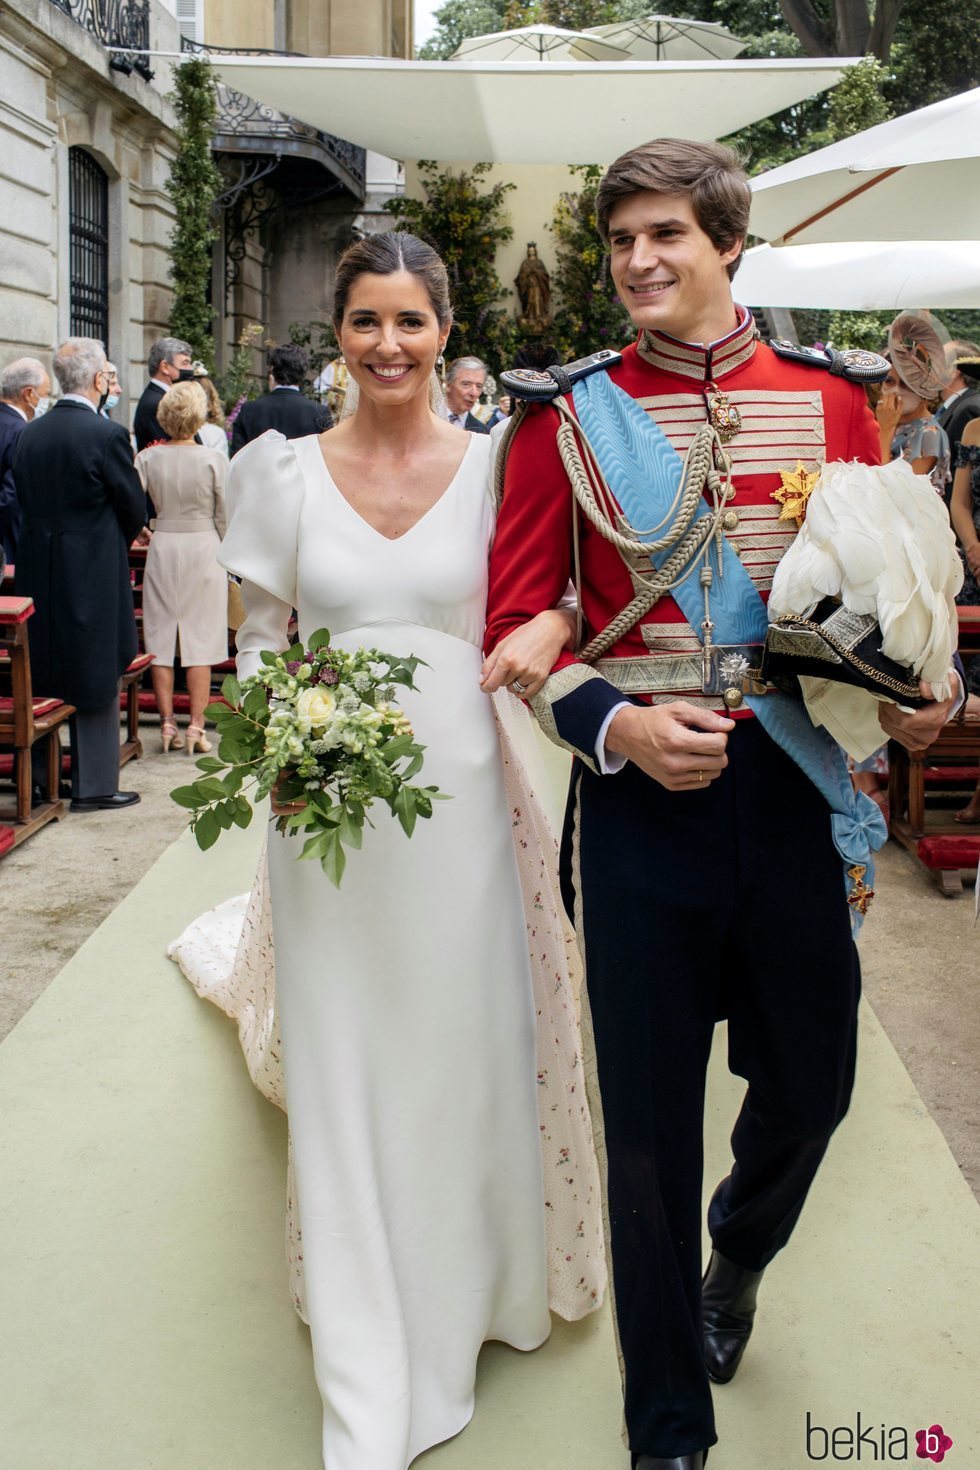 Carlos Fitz-James Stuart y Belén Corsini en su boda